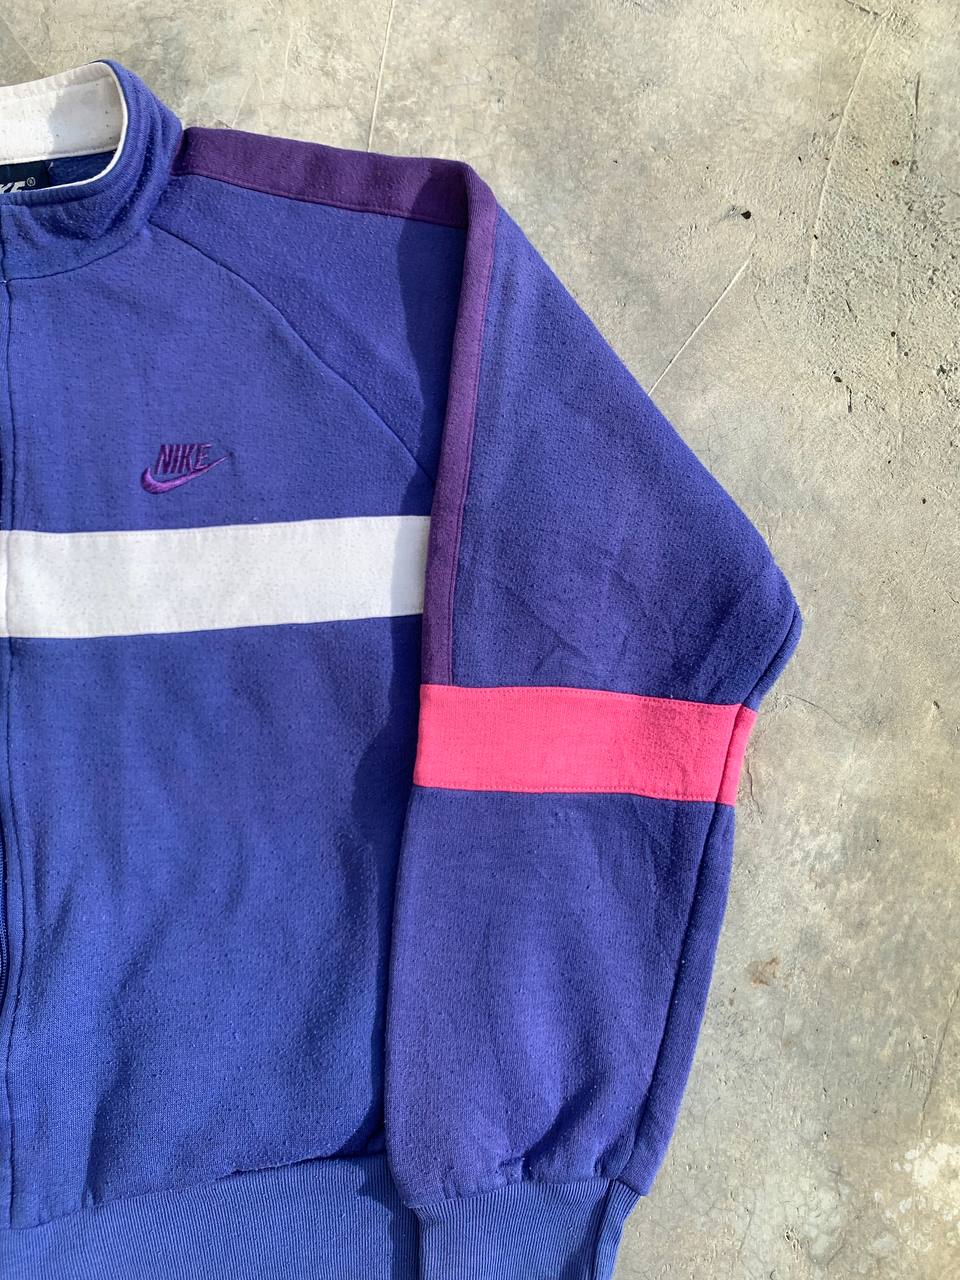 Vintage Nike Colorblock Zip Up Sweatshirt - 3